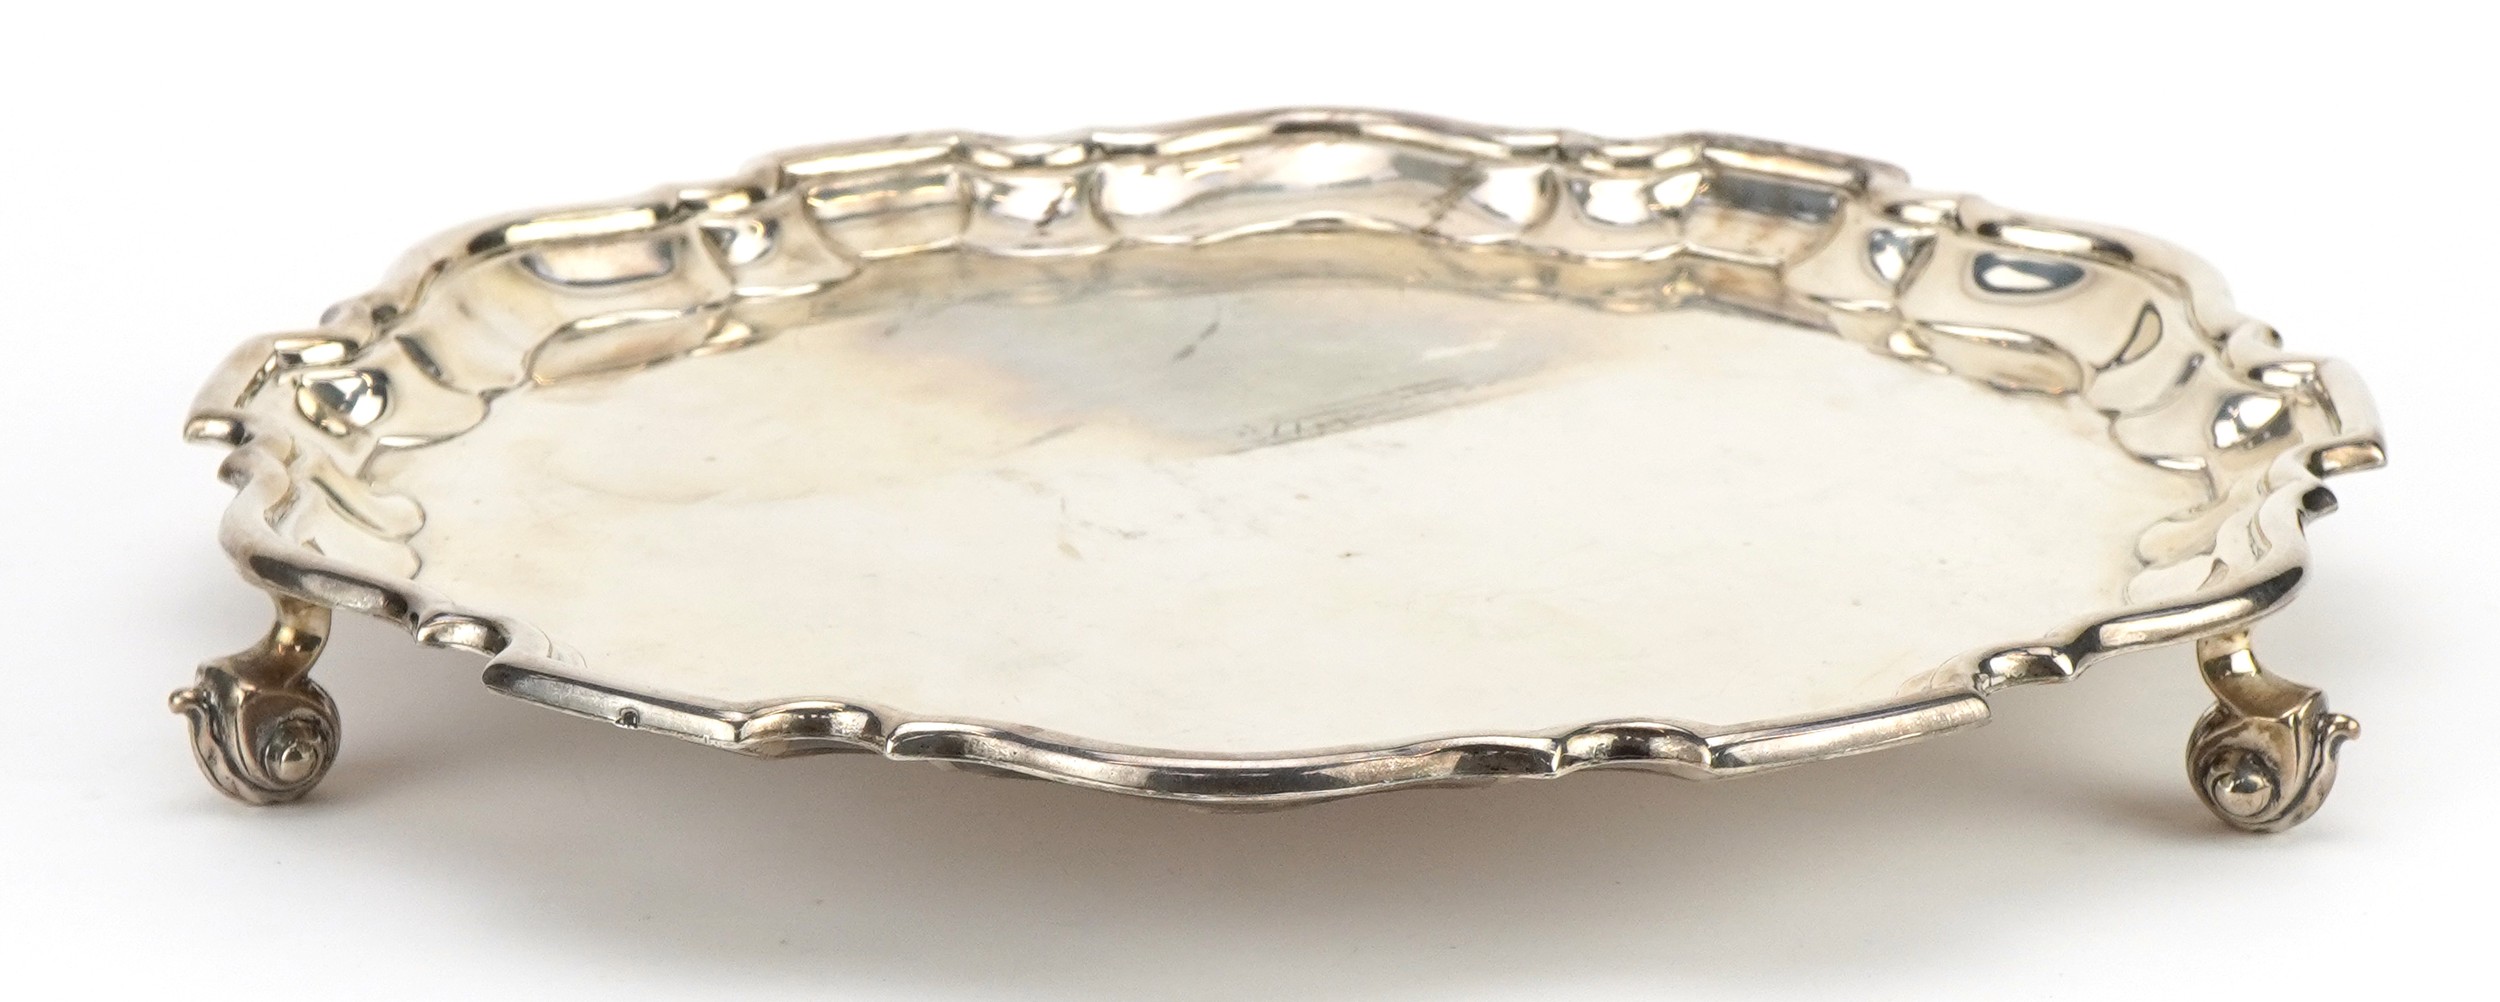 Martin Hall & Co Ltd, George V circular silver salver raised on three scrolled feet, Sheffield 1922,